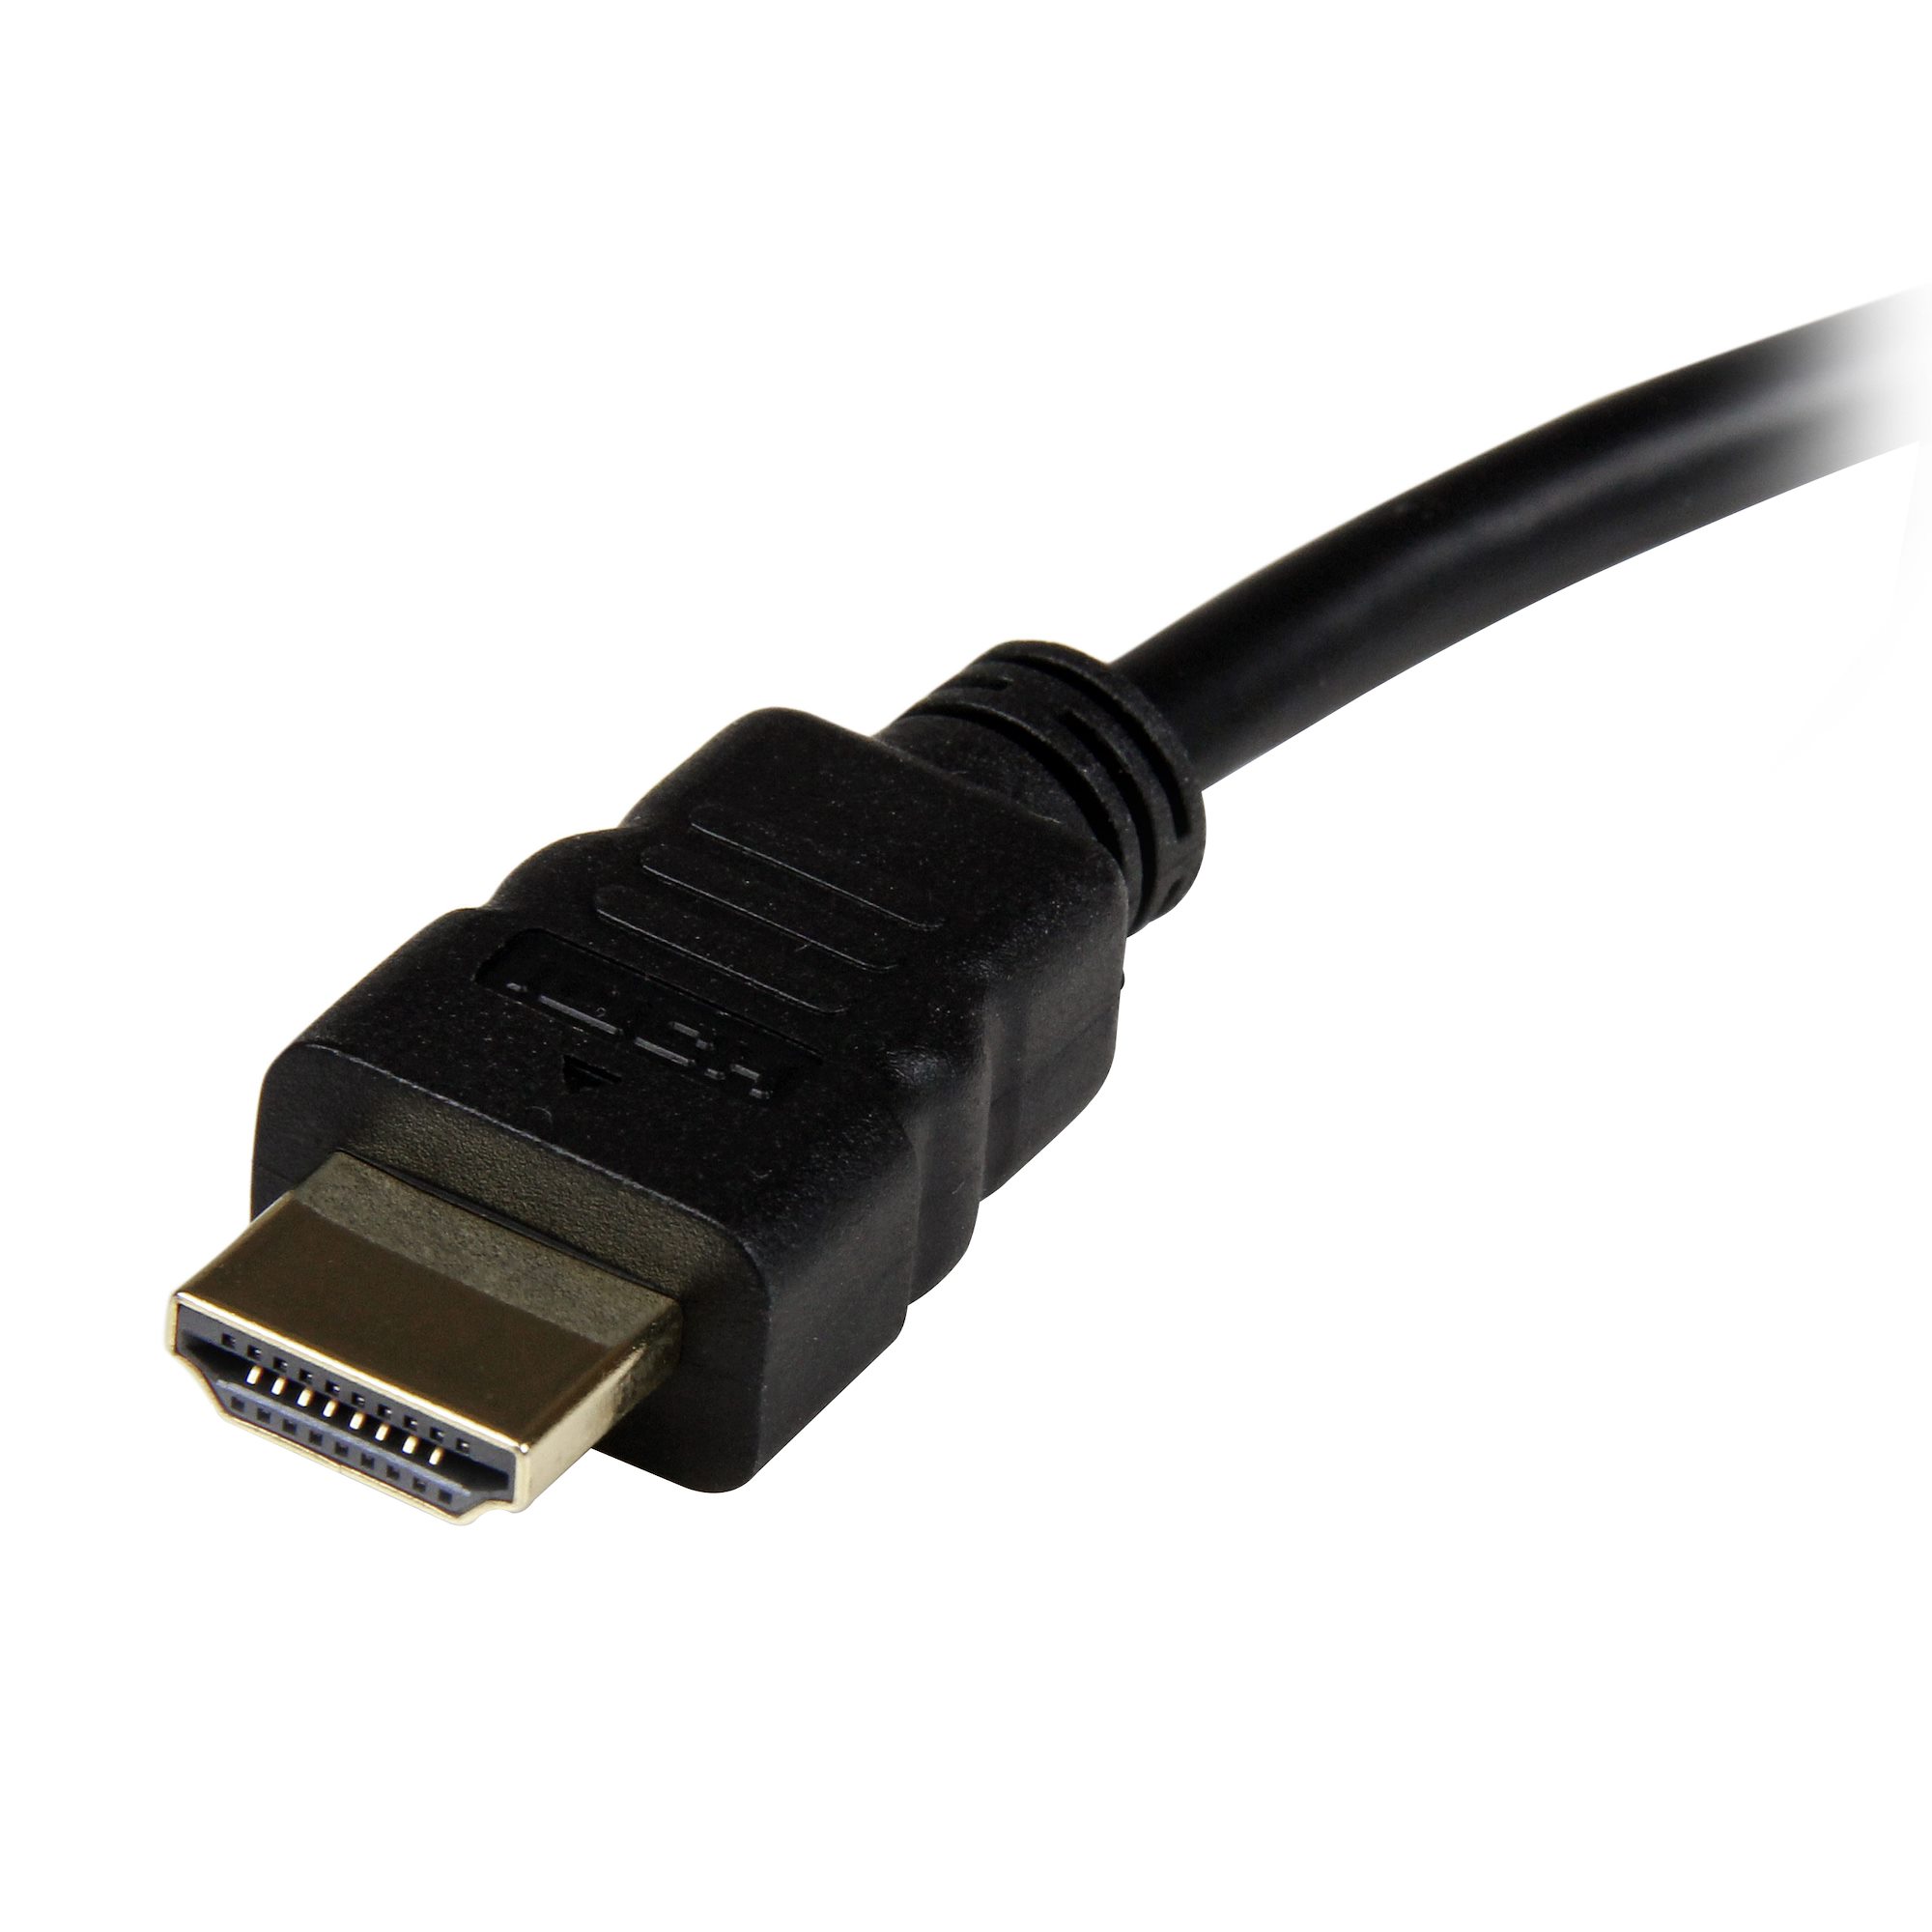 HDMI to VGA Adapter - HDMI & DVI Display Adapters, Display & Video  Adapters